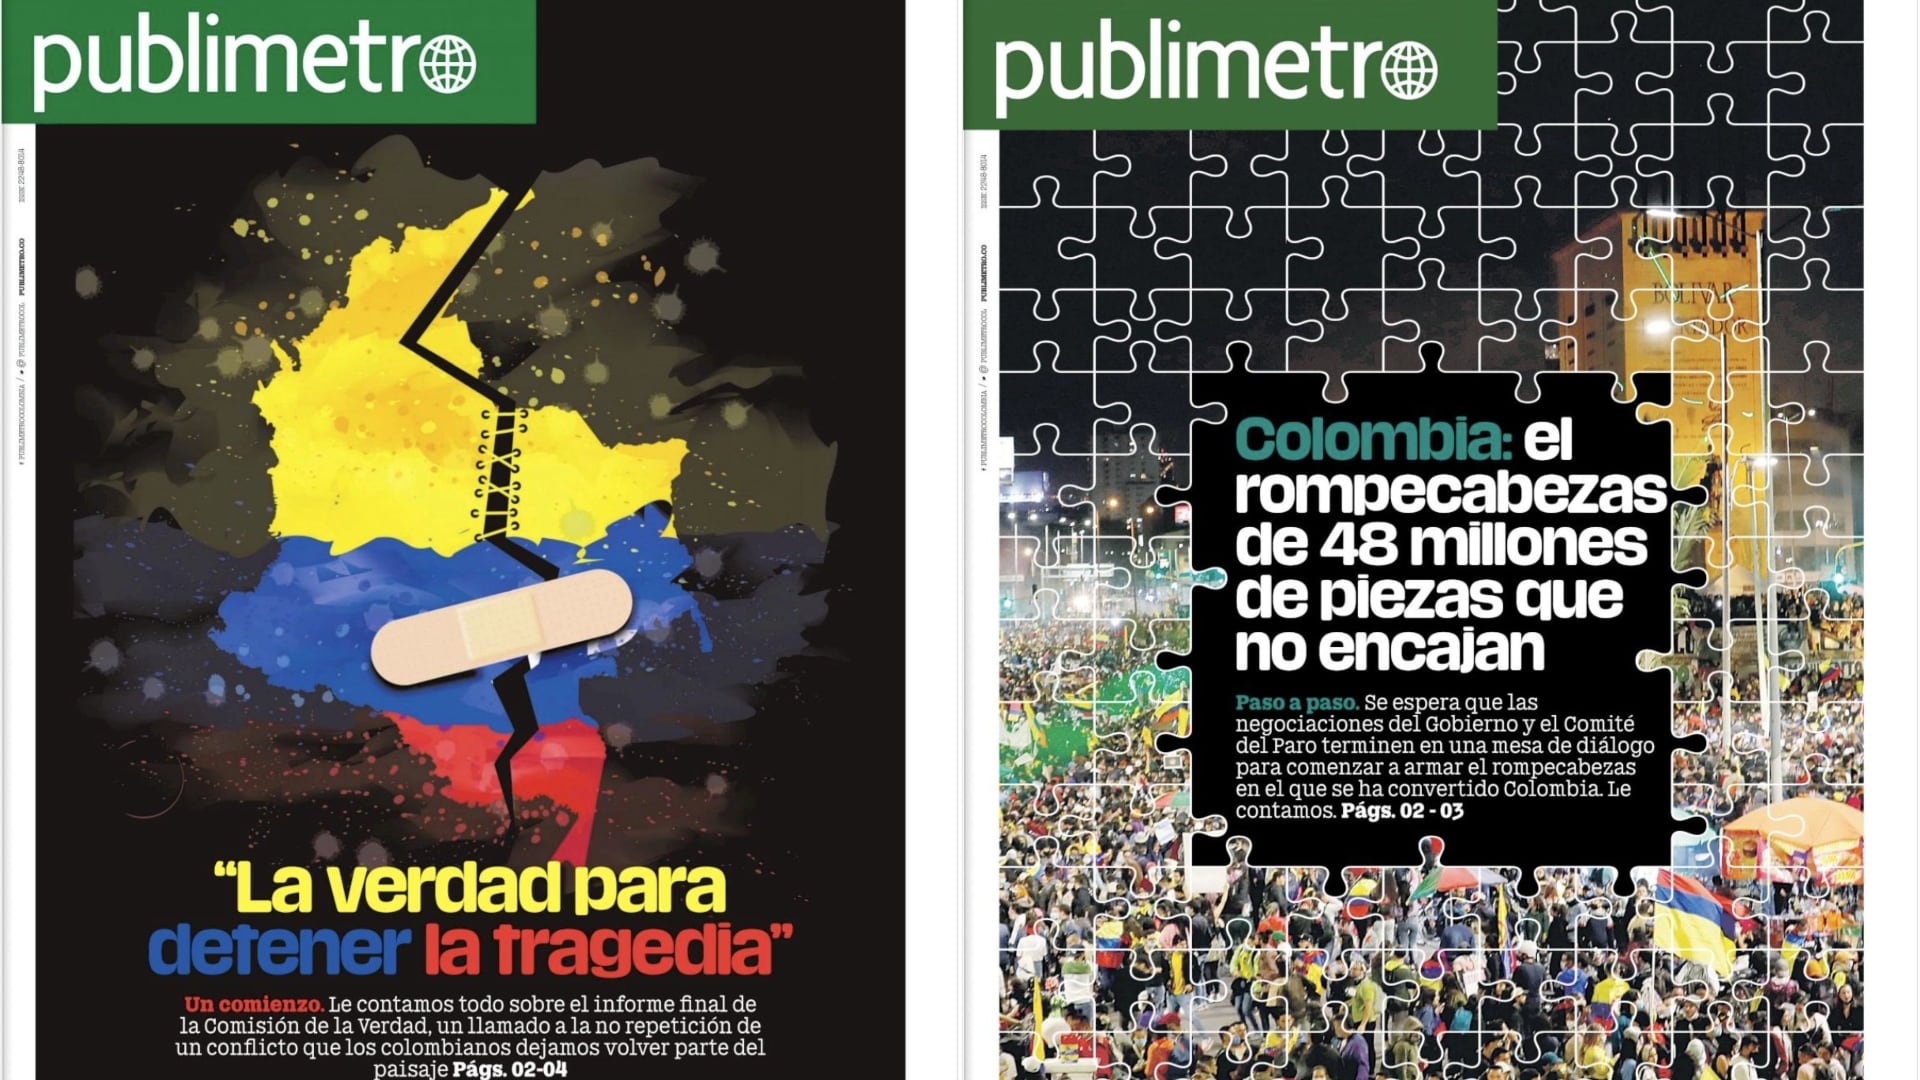 Aniversario Publimetro Colombia